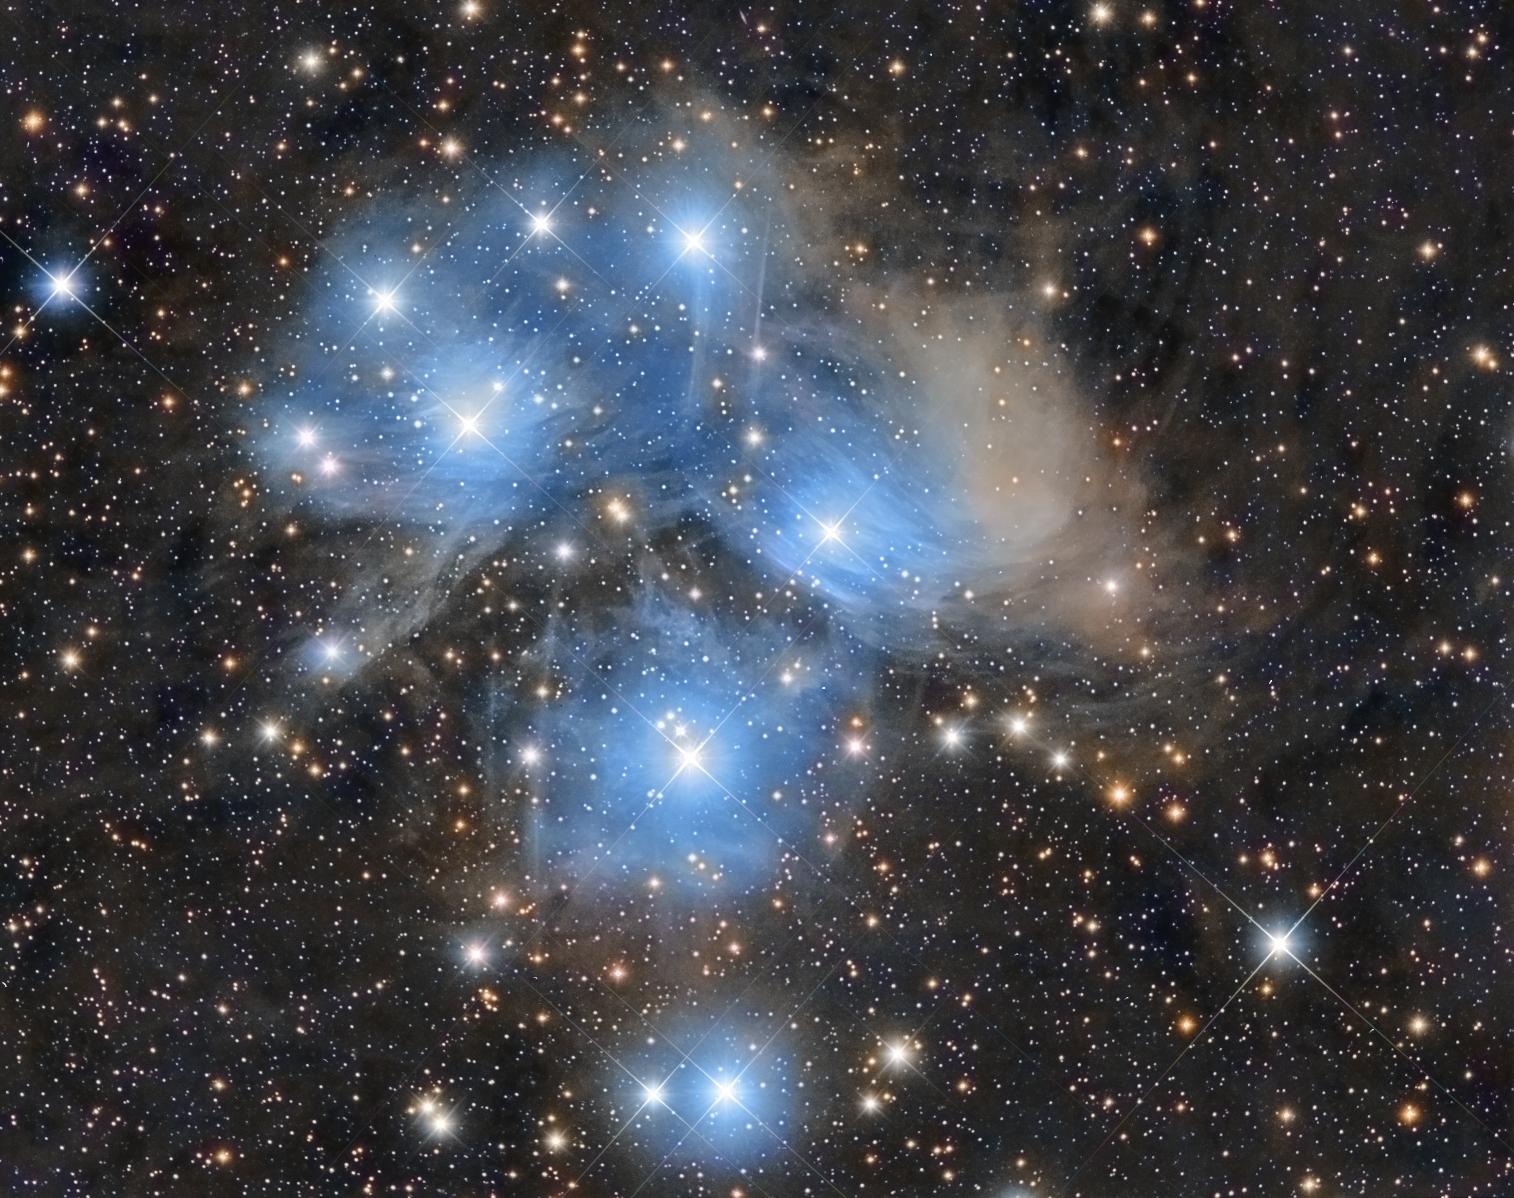 Pleiades Star Cluster. 